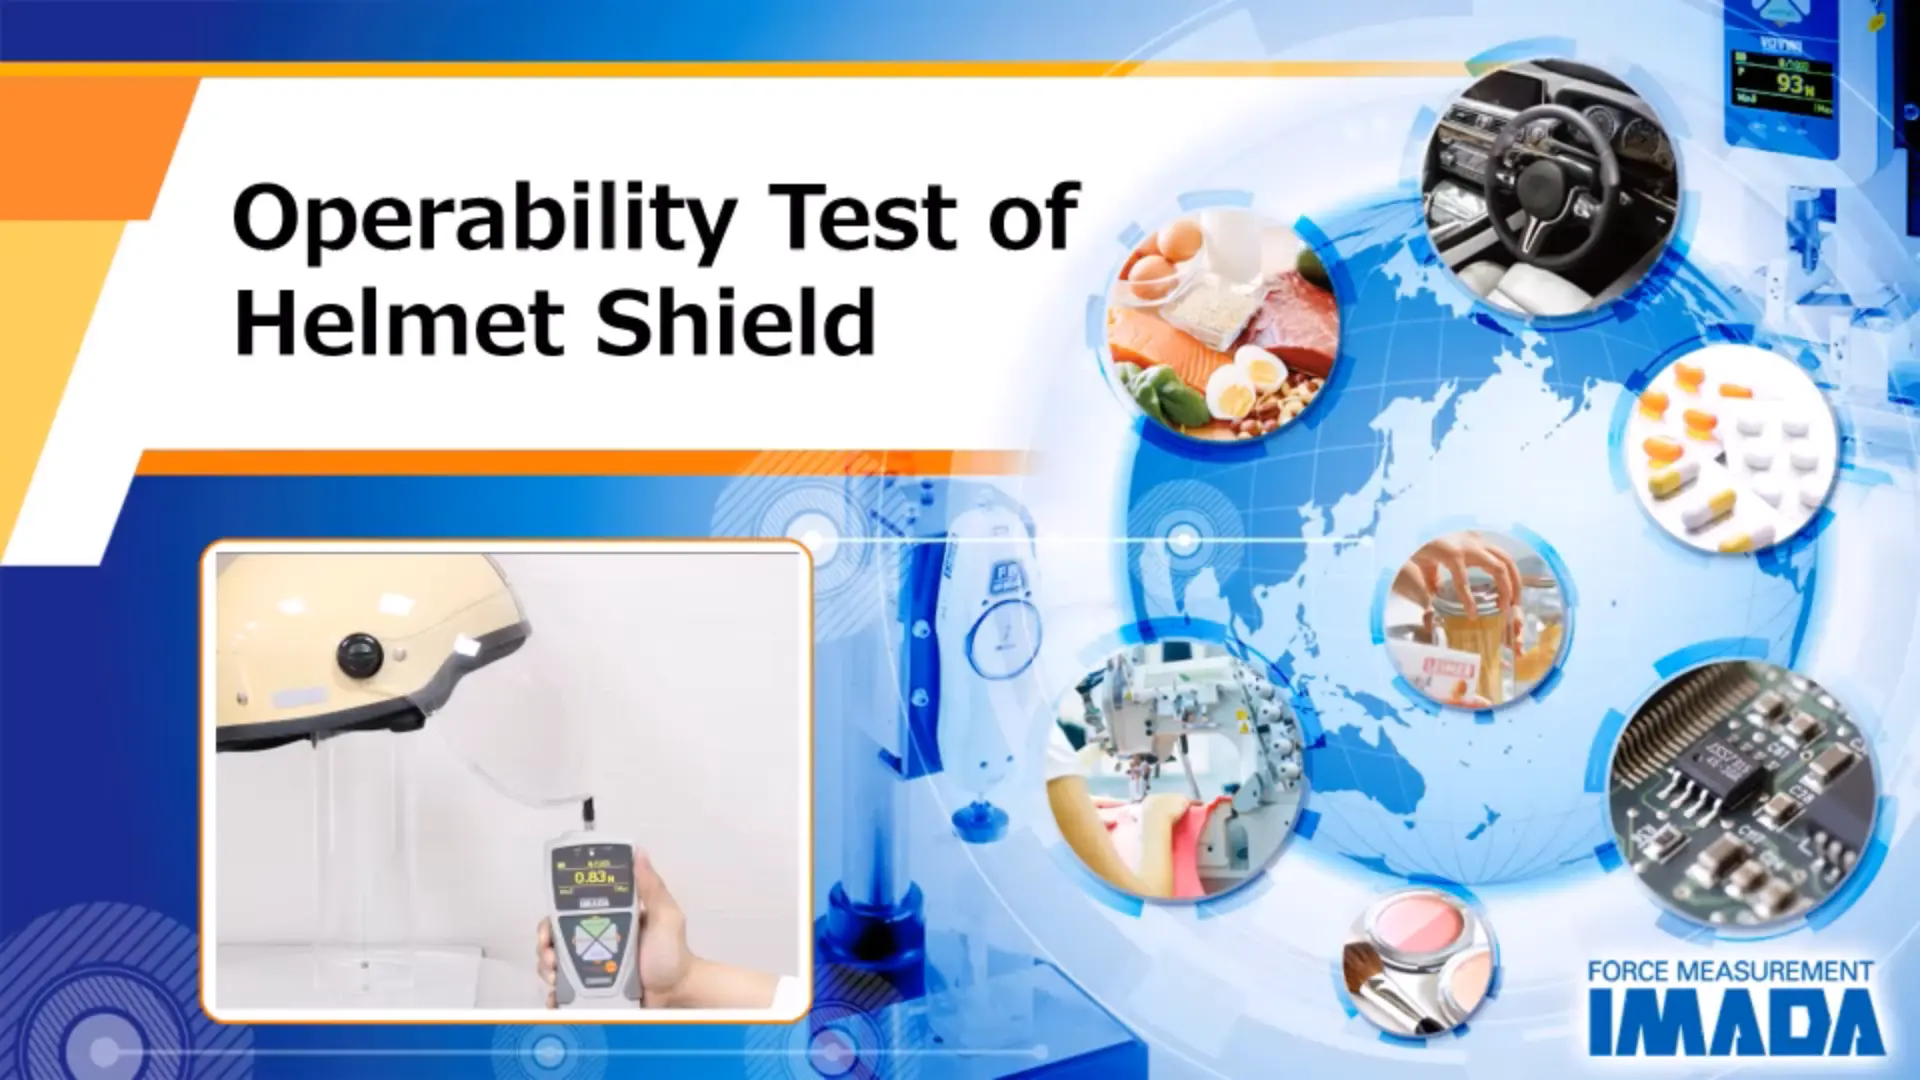 Opening operability test of helmet shield